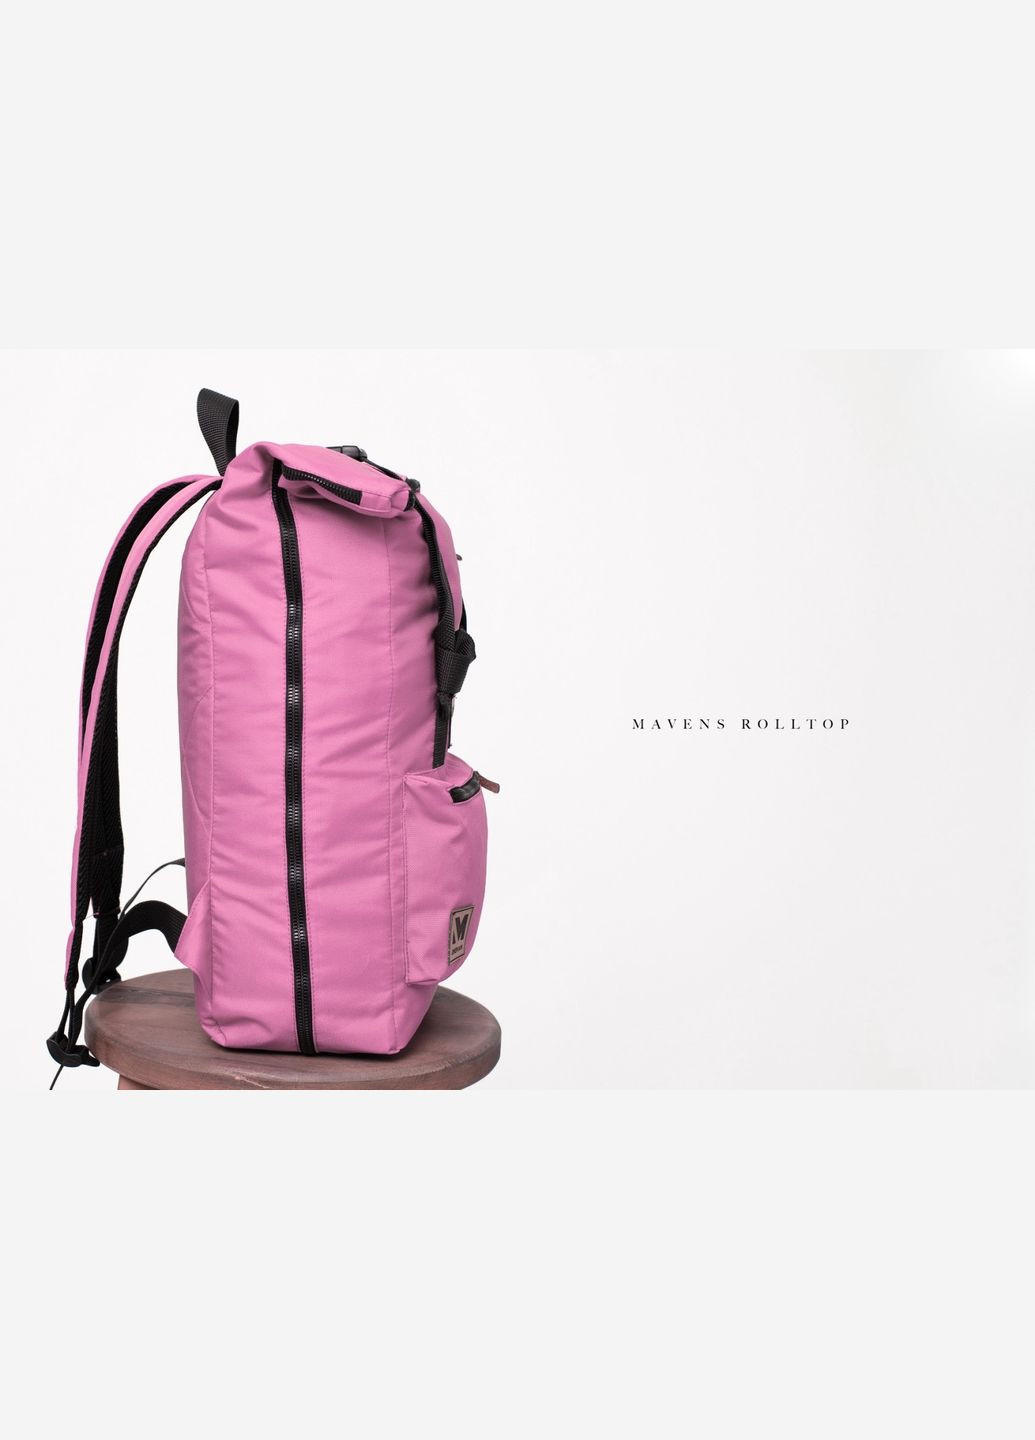 Рюкзак " Rolltop" для ручної поклажі, стандарт Ryanair та Wizz Air 40x20x25 см. рожевий Mavens (269463469)